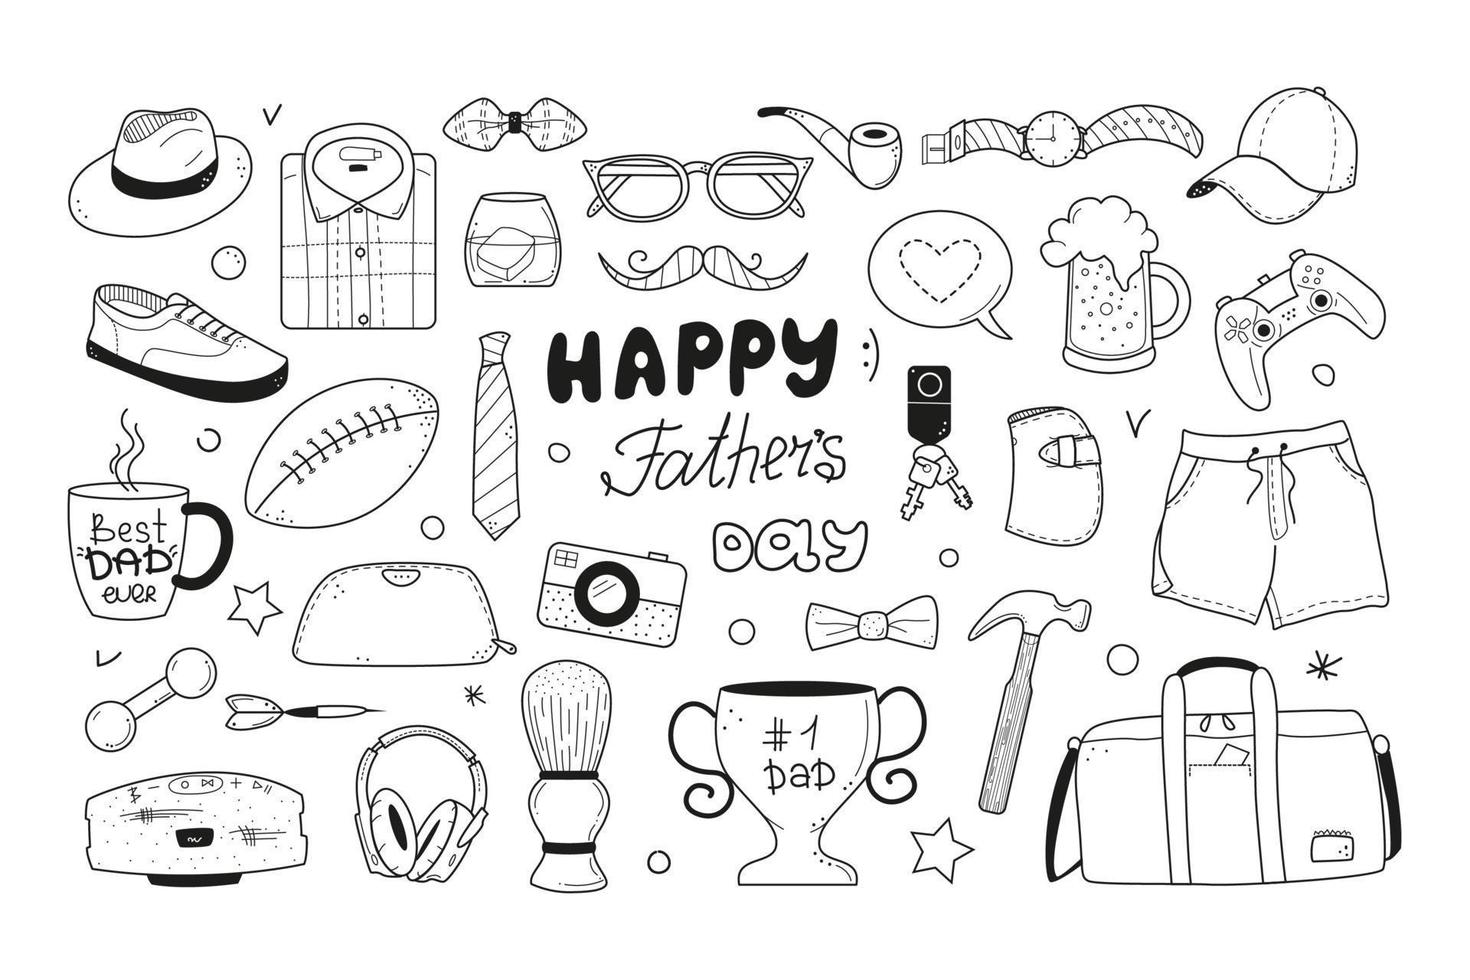 iconos de garabatos del día del padre feliz establecidos en el estilo de boceto. Ilustración de vector de artículos masculinos dibujados a mano aislado sobre fondo blanco